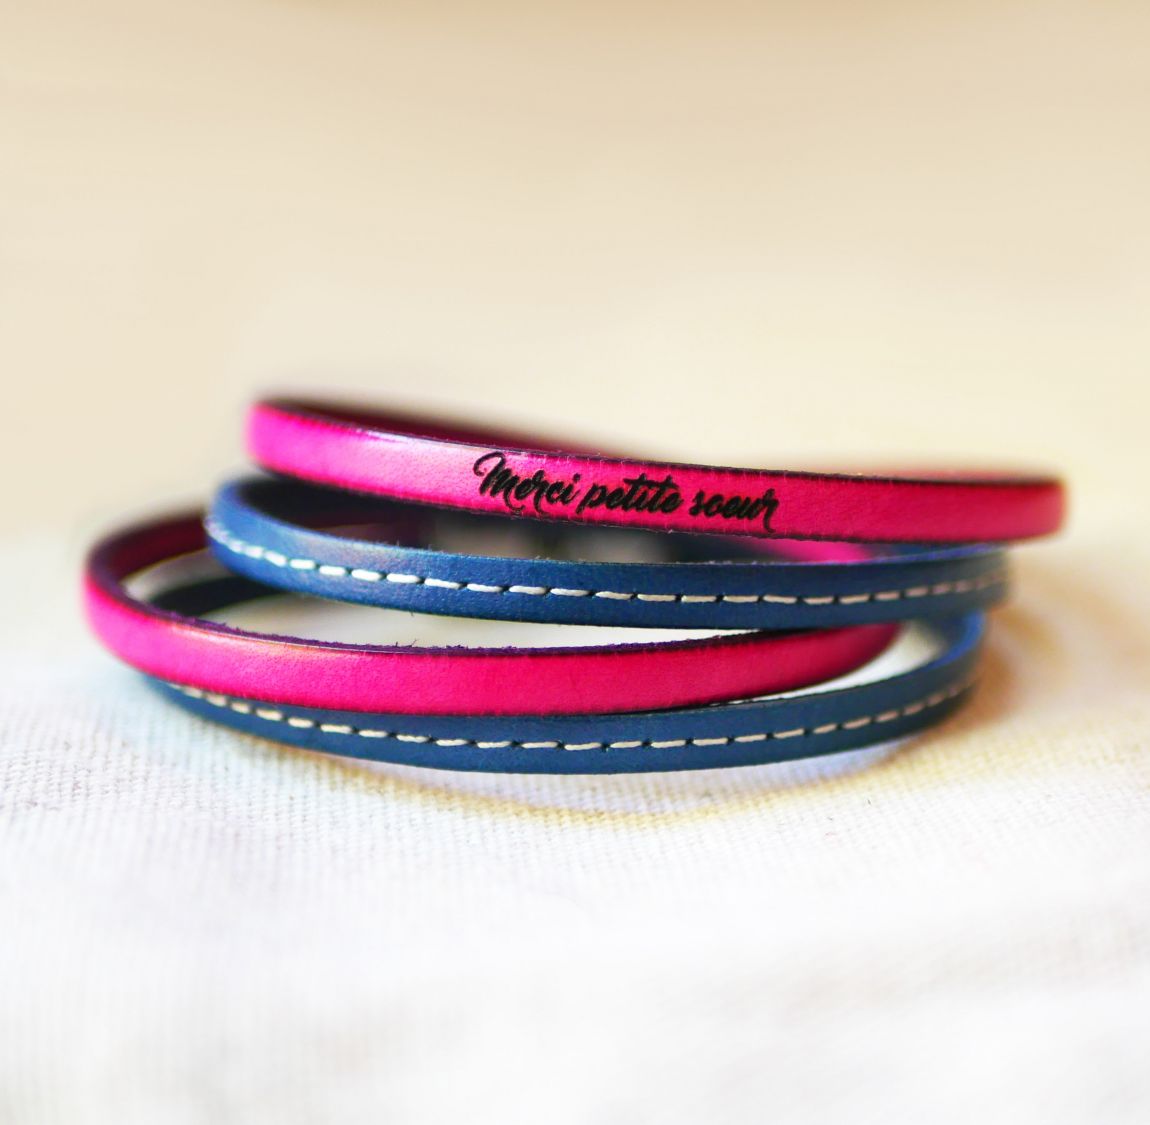 Bracelet double cuir bleu à surpiqûres et couleur au choix à personnaliser par gravure